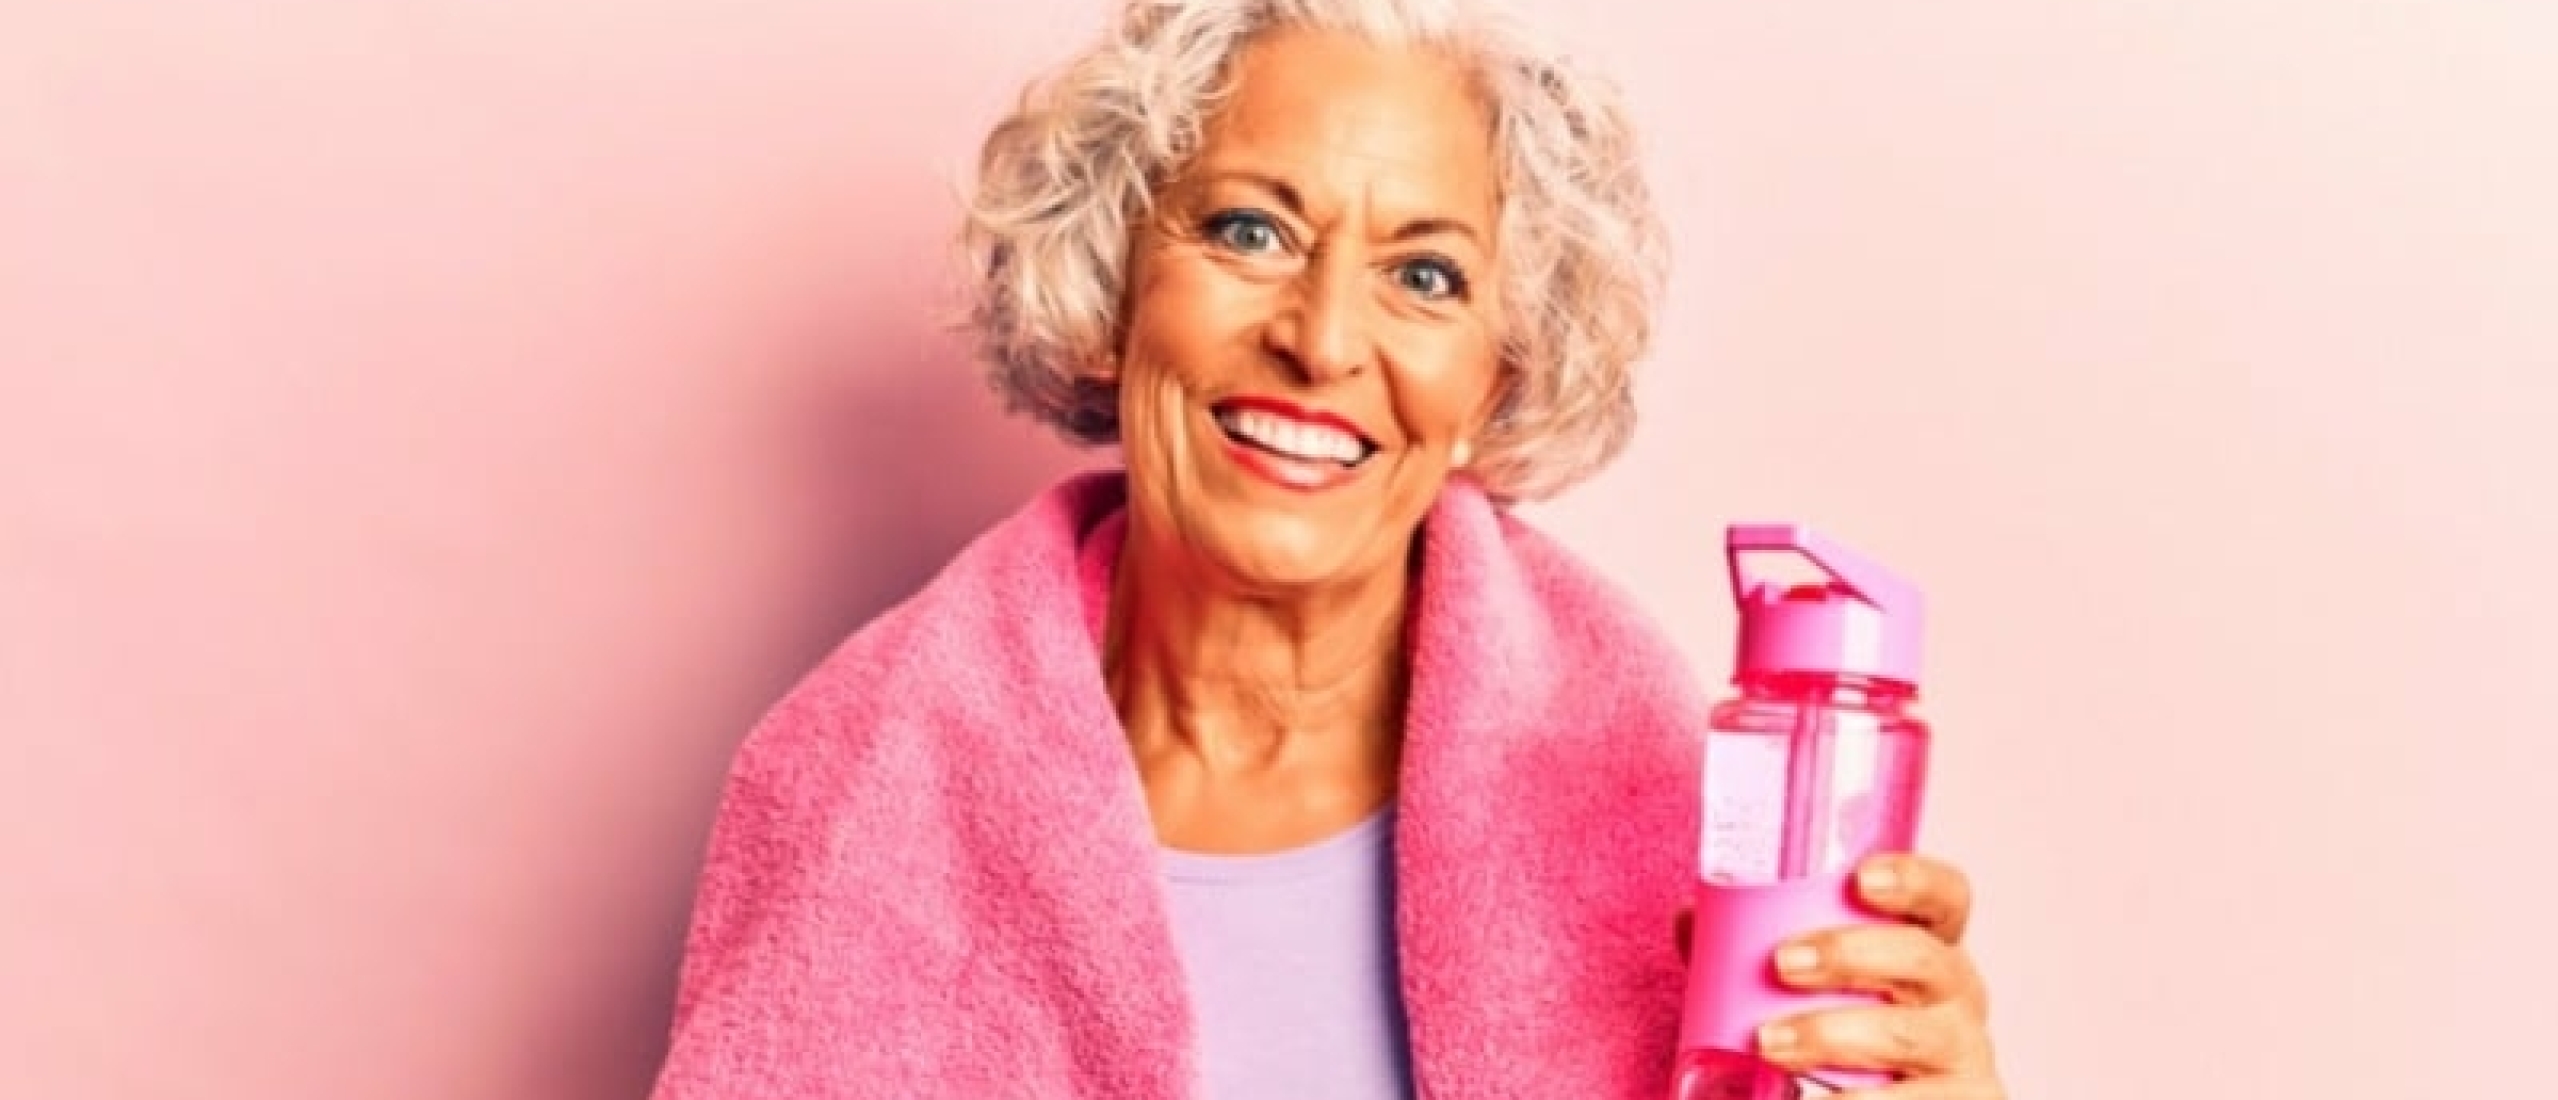 11 voordelen van krachttraining voor ouderen